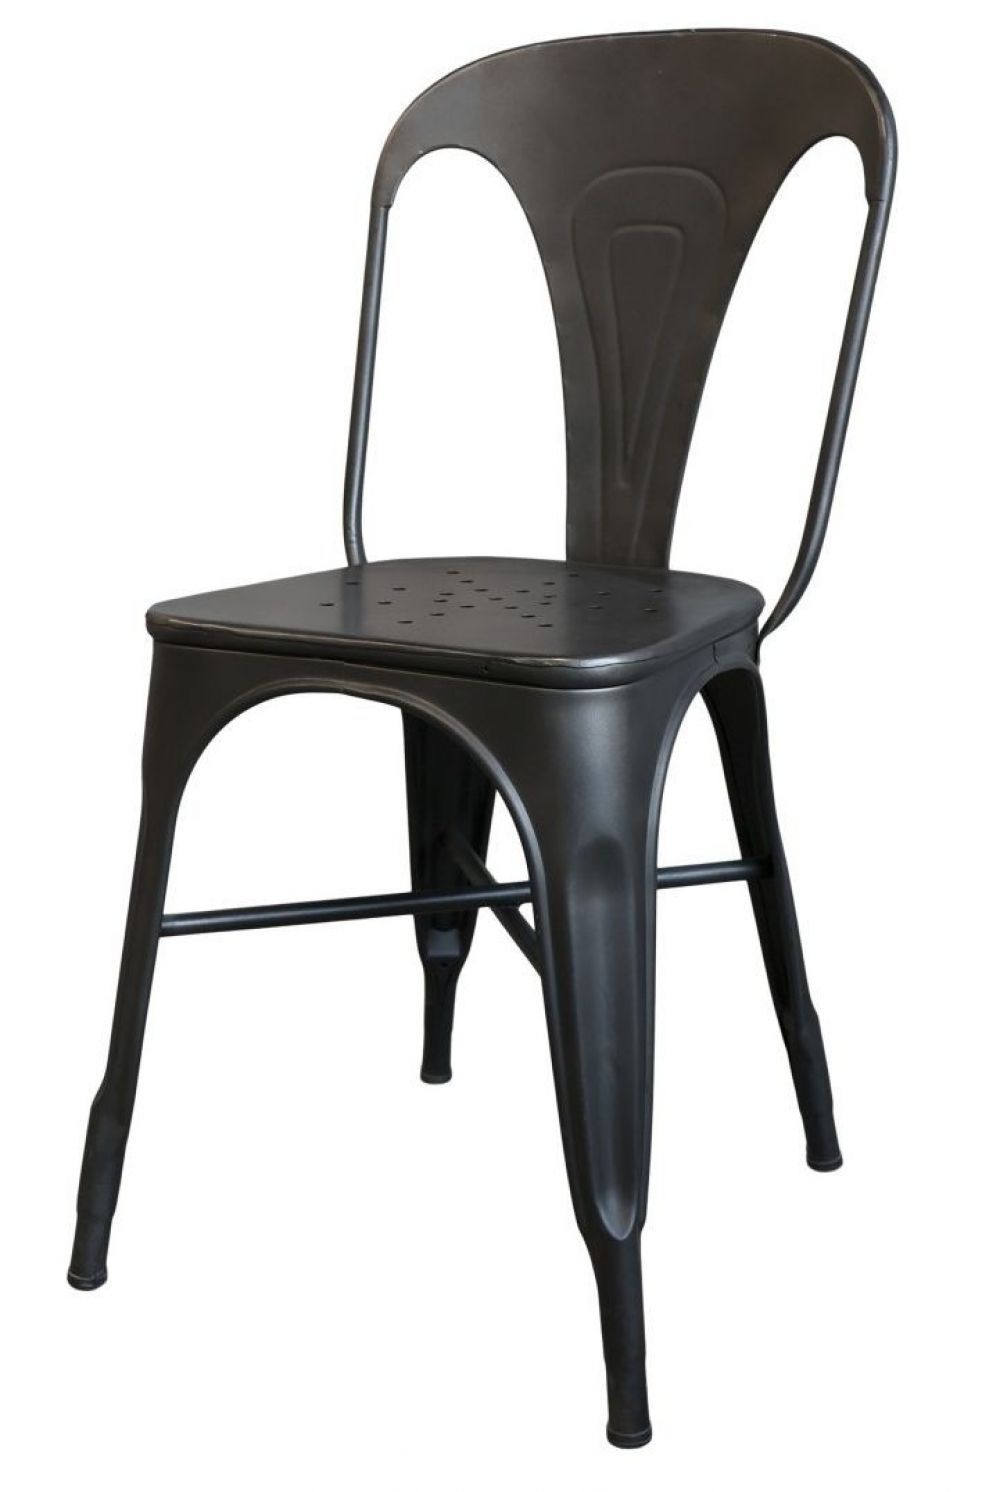 Černá antik kovová židle Factory Chair - 37*36*86cm Chic Antique - LaHome - vintage dekorace